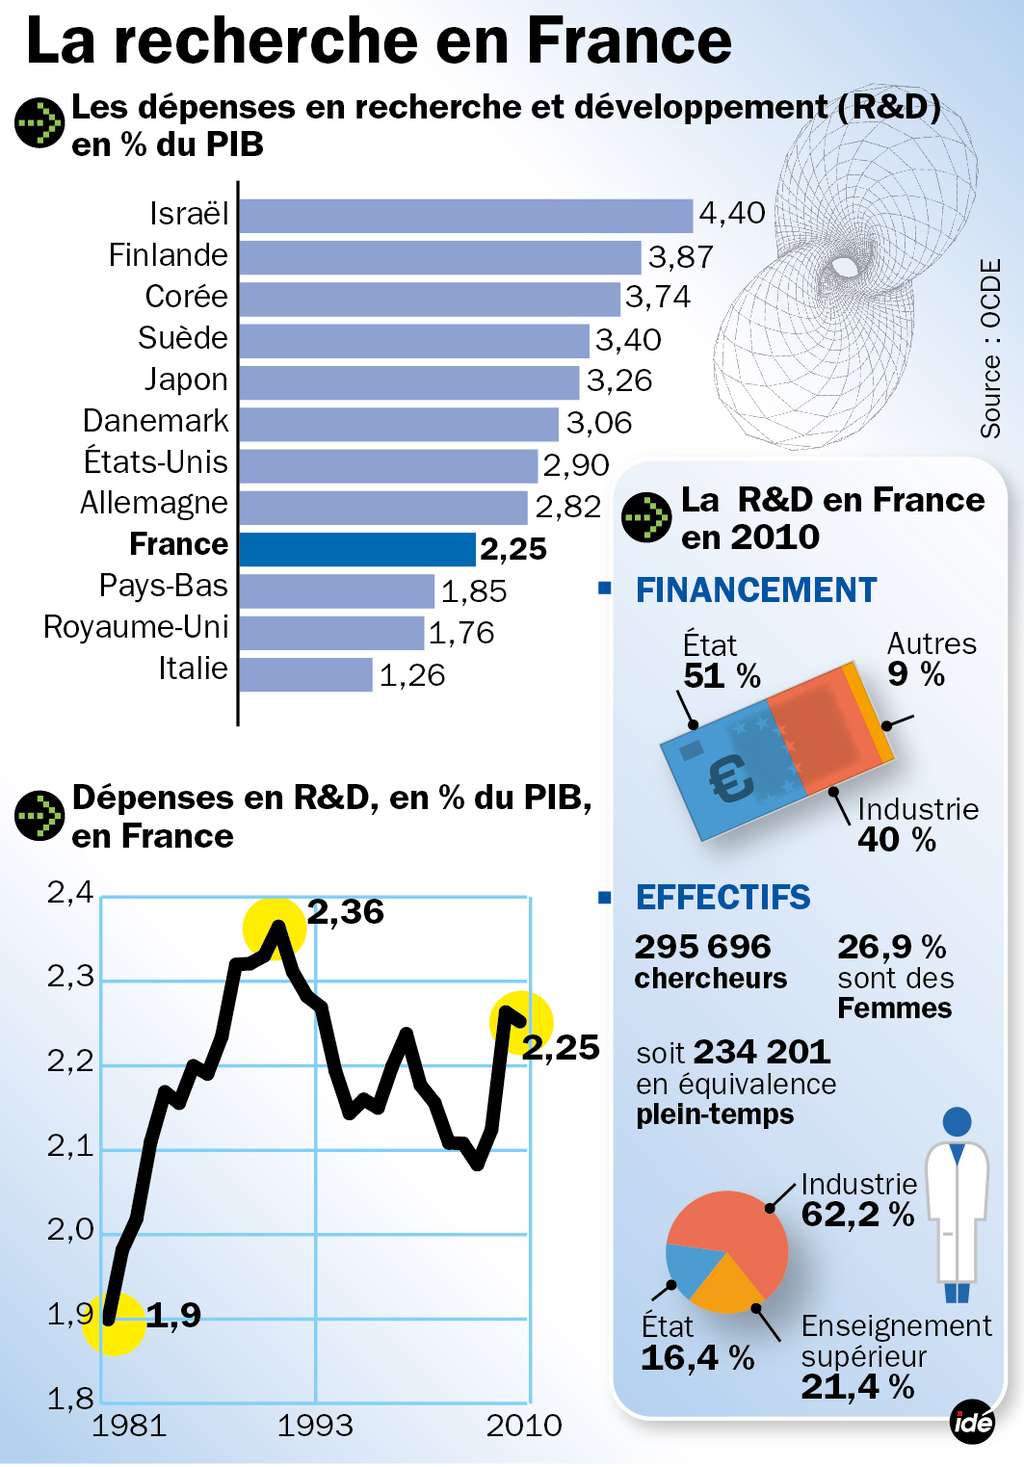 Les principaux chiffres de la recherche en France. Au sein de l'OCDE, seuls 6 pays consacrent à la R&amp;D plus de 3 % de leur PIB. La France, bon an mal an, fluctue autour de 2,1 % et compte moins de 300.000 chercheurs, dont certains ont aussi une autre activité, en général l'enseignement. © Idé